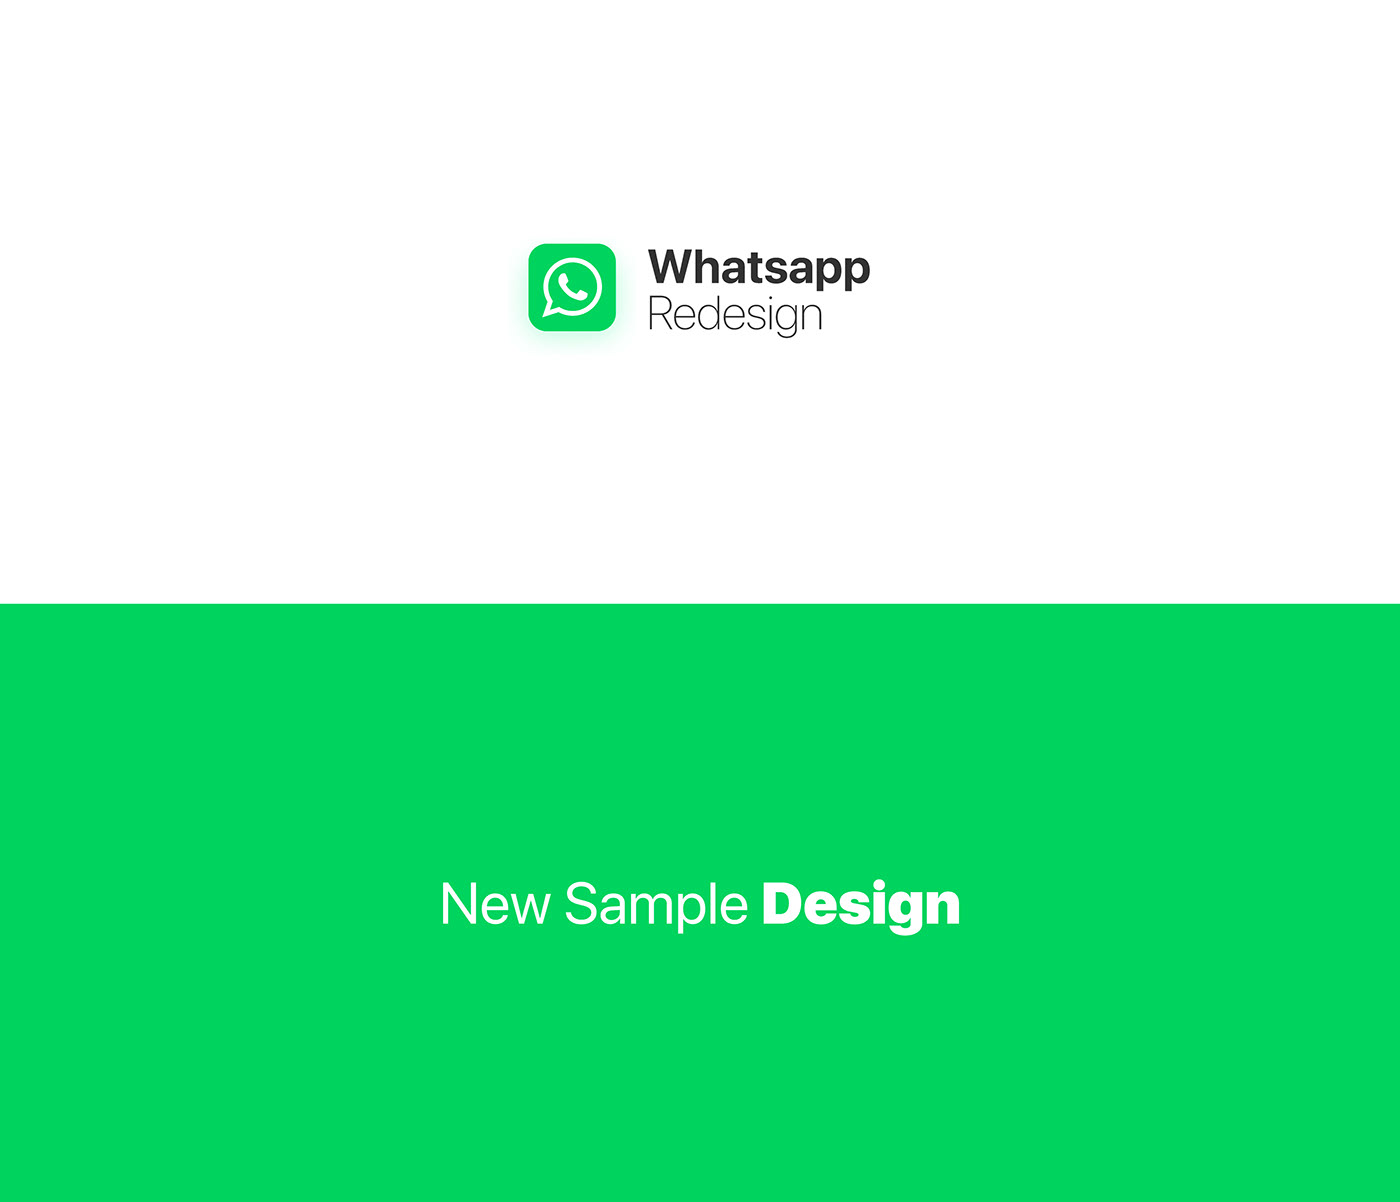 WhatsApp redesign rebranding dubai ux UI Arab app Chat Saudi Arabia